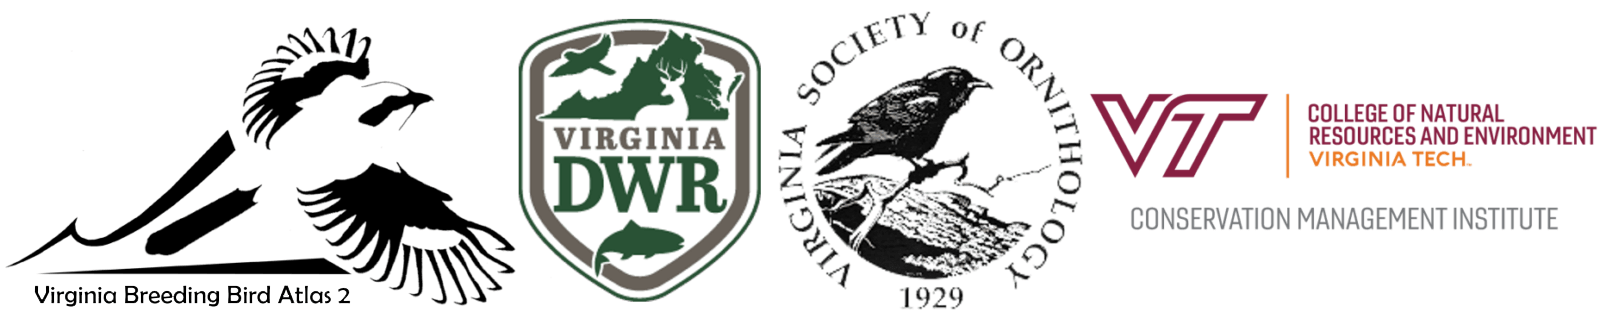 The logos for the Virginia DWR, Virginia Breeding bird atlas 2, Virginia society of Ornithology and Virginia Tech.